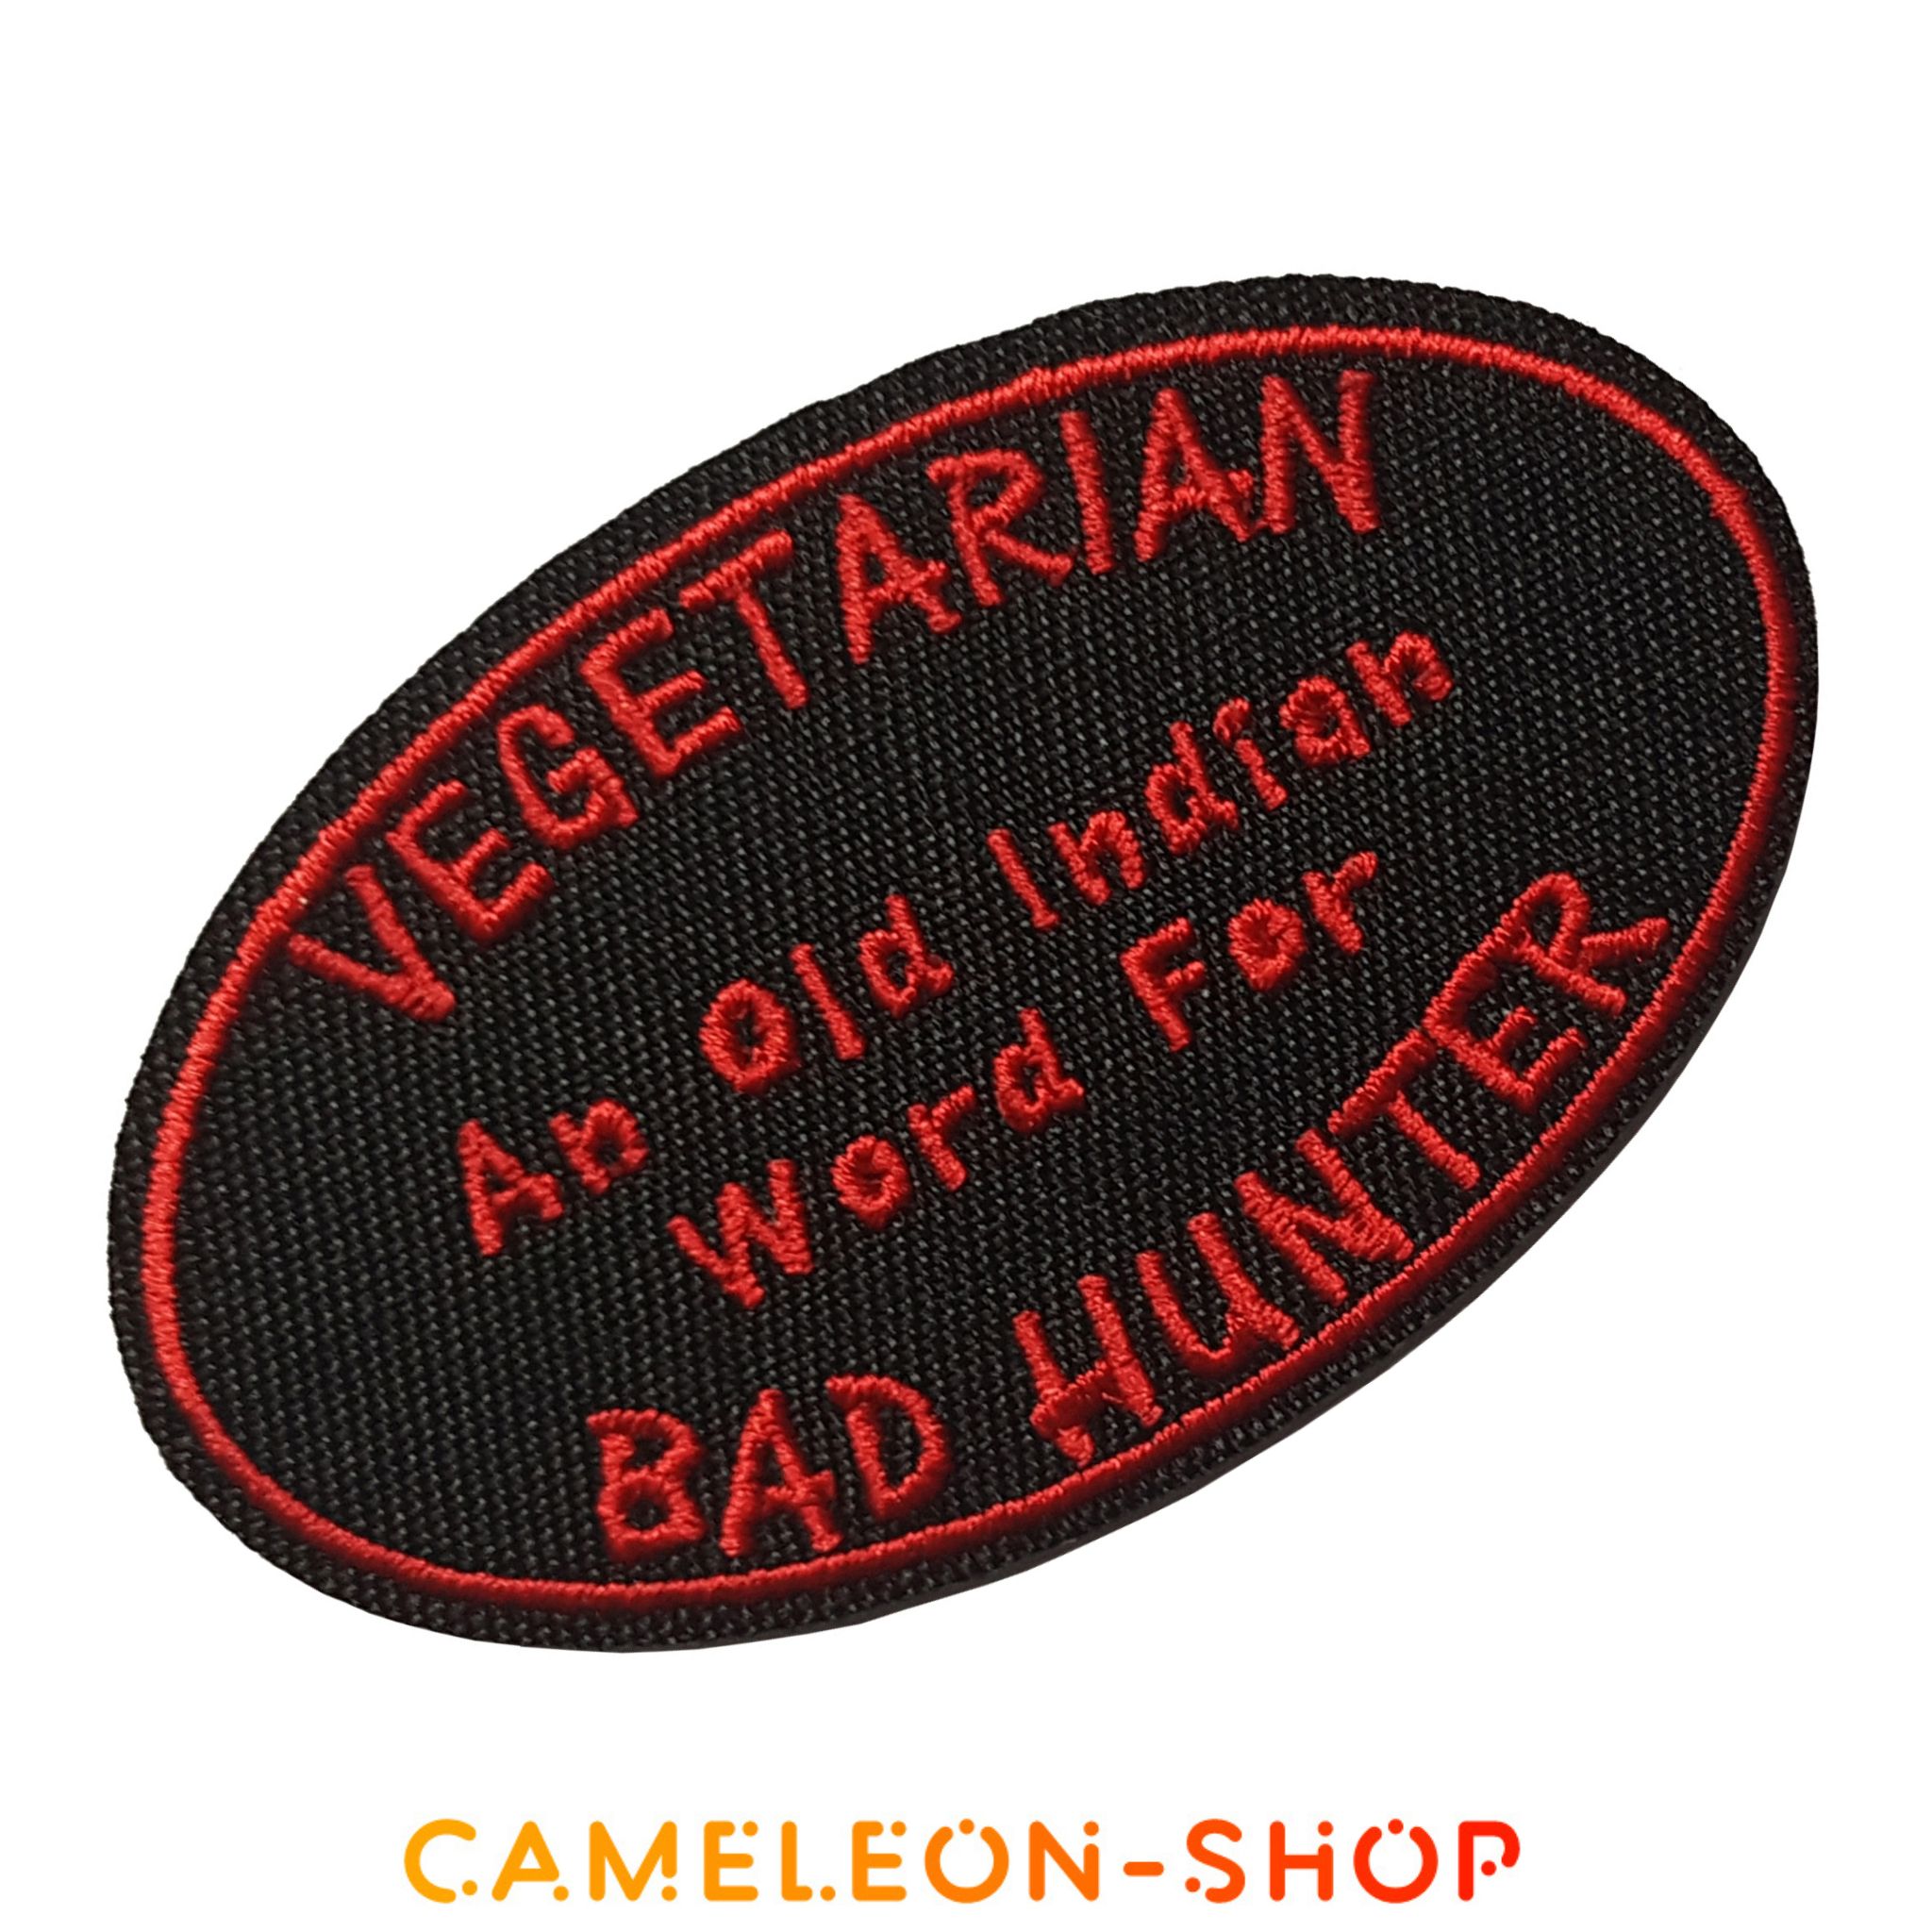 Patch humoristique parodie parodique végétarien un vieux mot pour dire mauvais chasseur 3